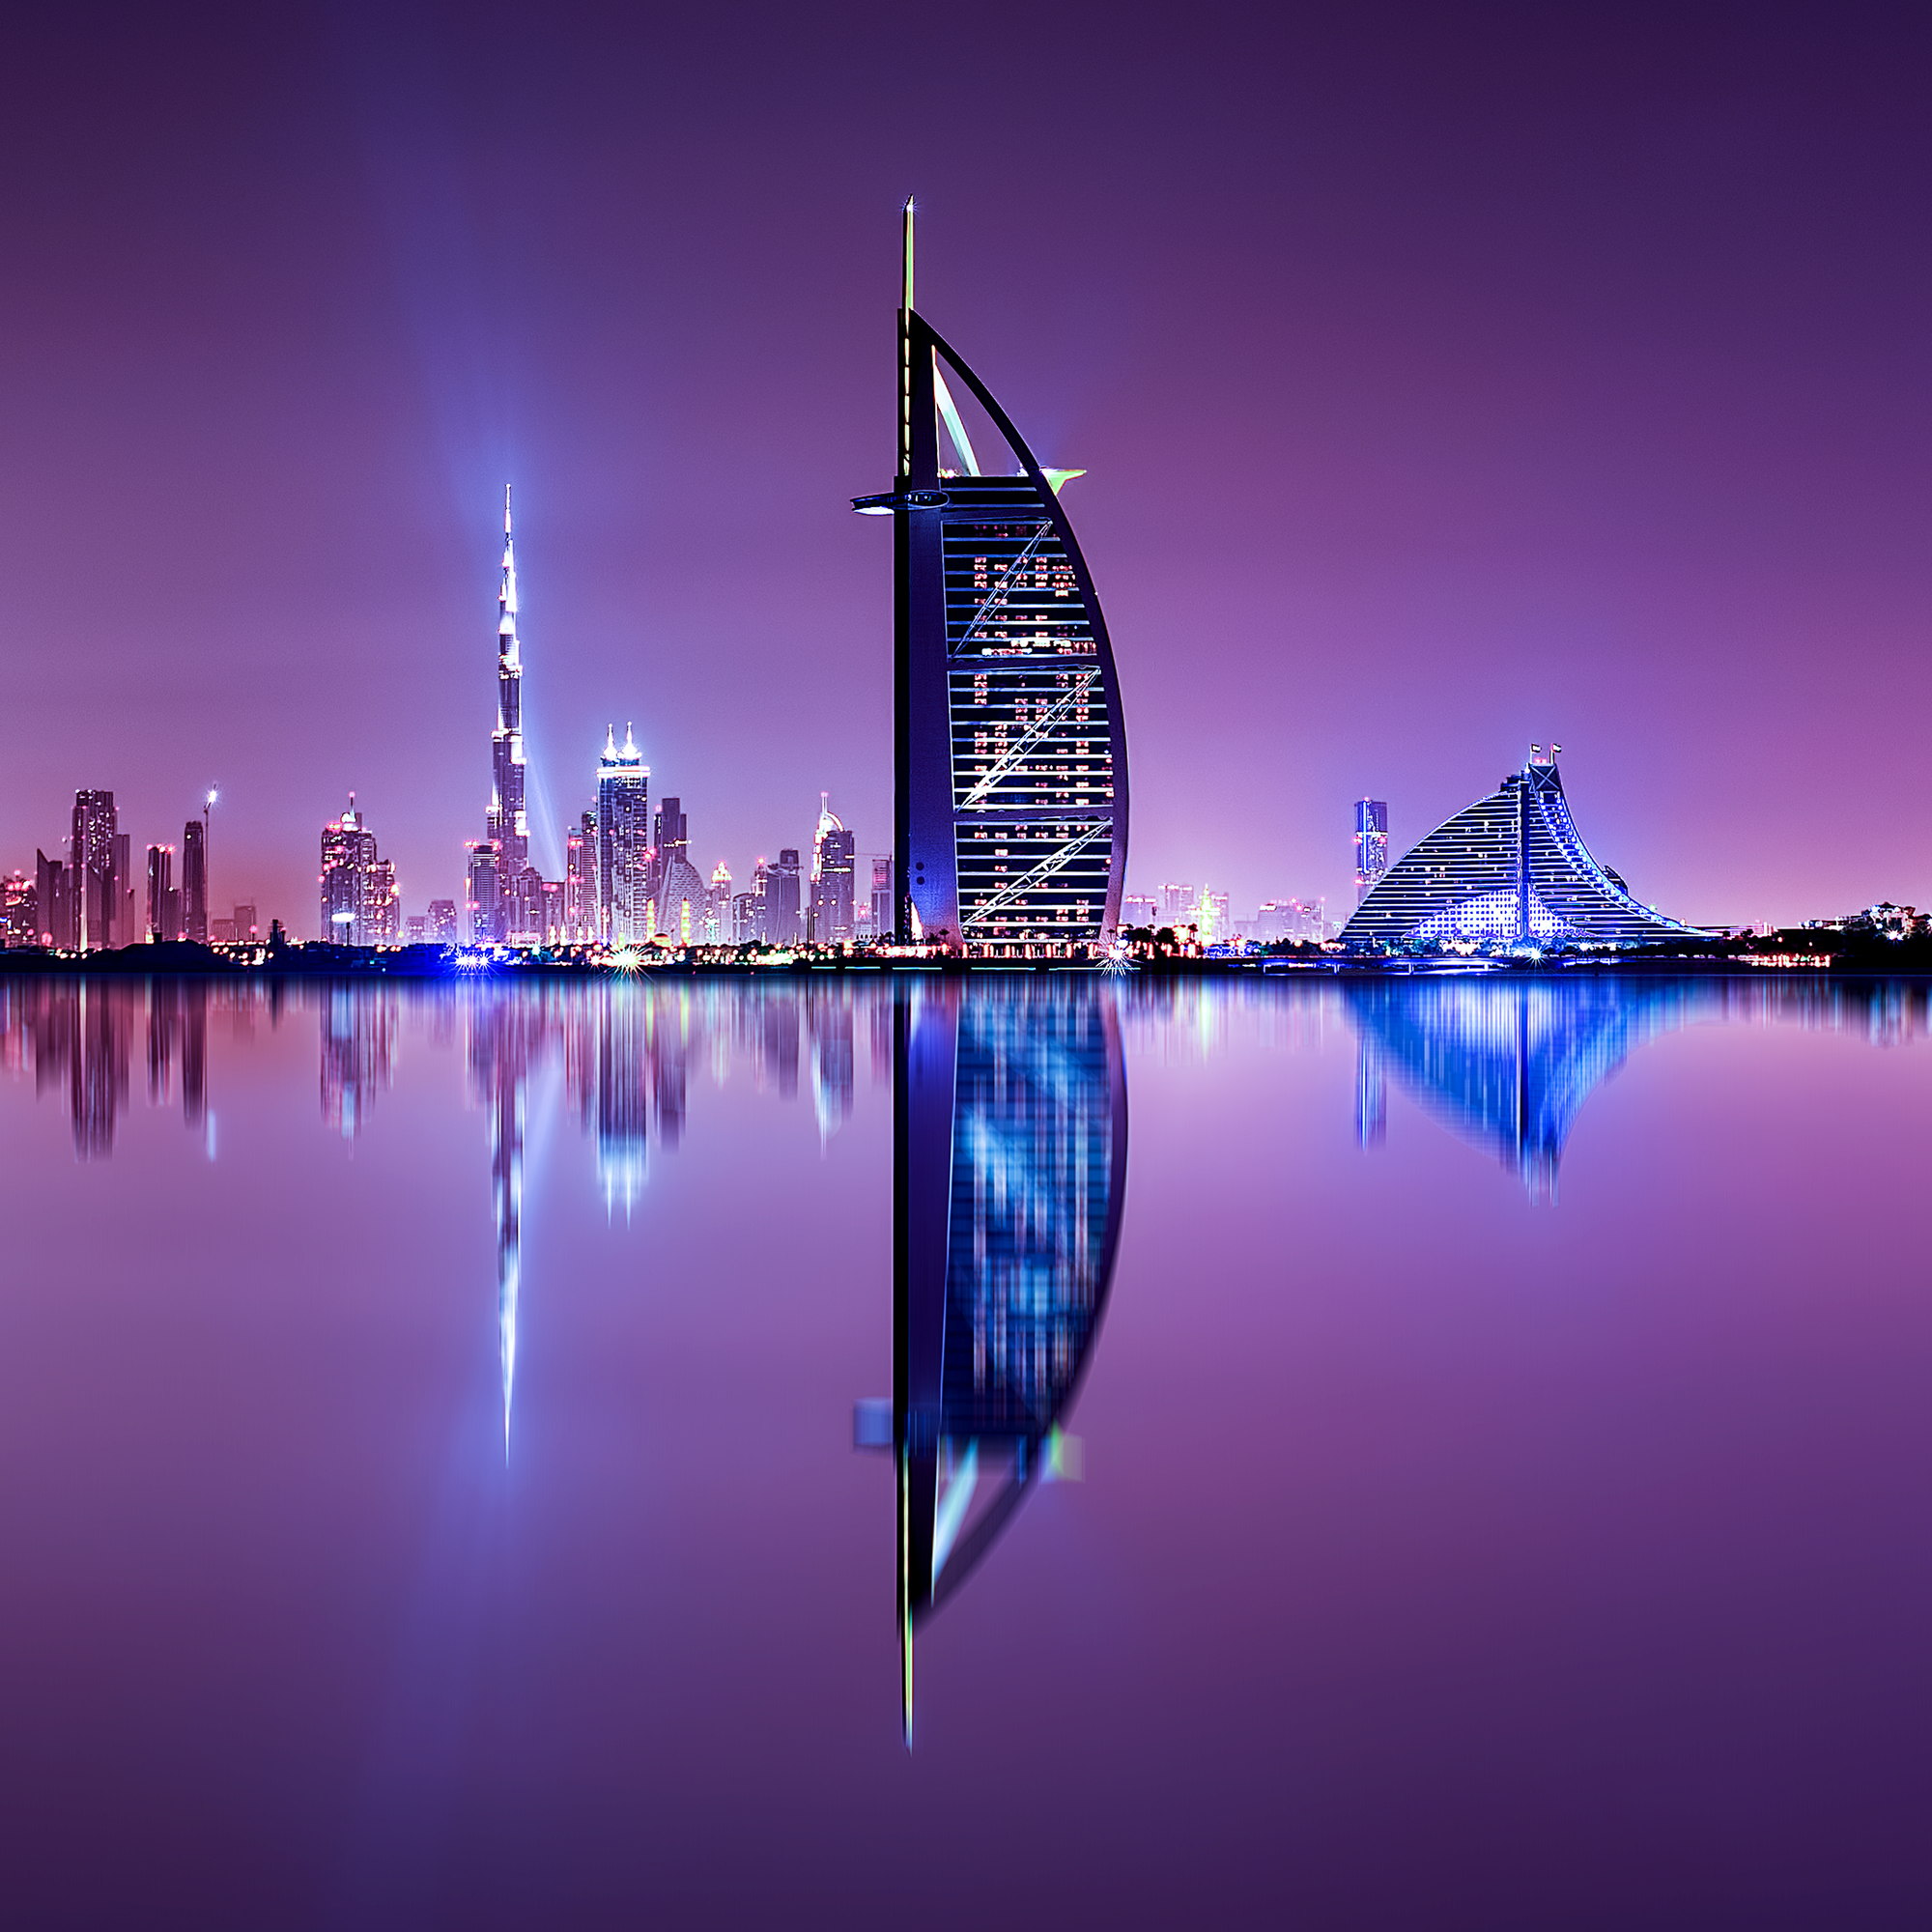 穿越中东非 【埃及+迪拜】10日 全程国际五星酒店  北京起止 阿联酋航空 内陆一段加飞